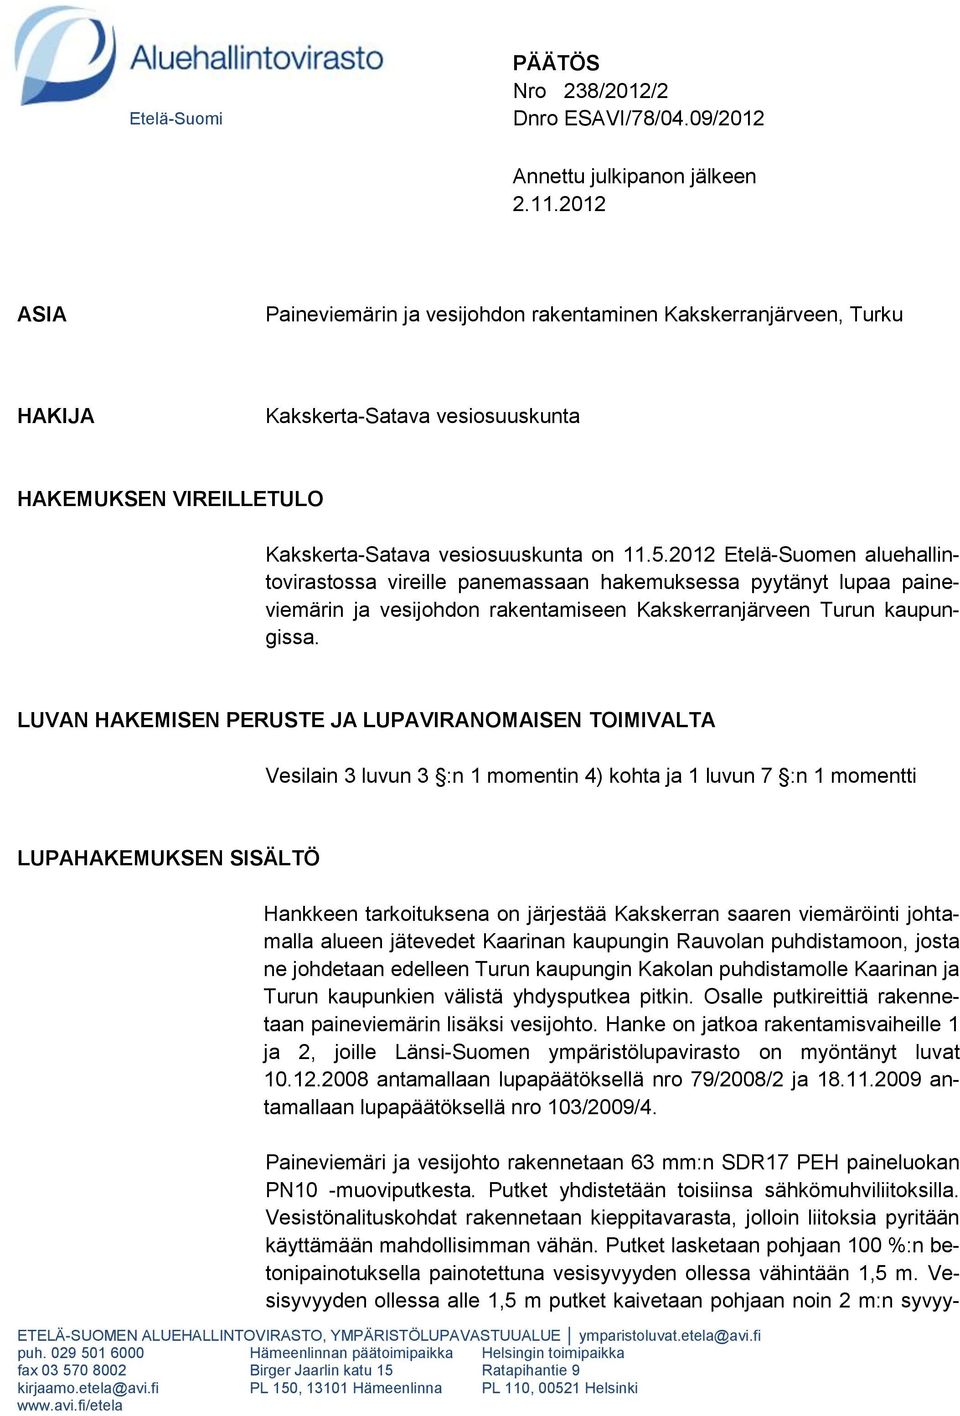 2012 Etelä-Suomen aluehallintovirastossa vireille panemassaan hakemuksessa pyytänyt lupaa paineviemärin ja vesijohdon rakentamiseen Kakskerranjärveen Turun kaupungissa.